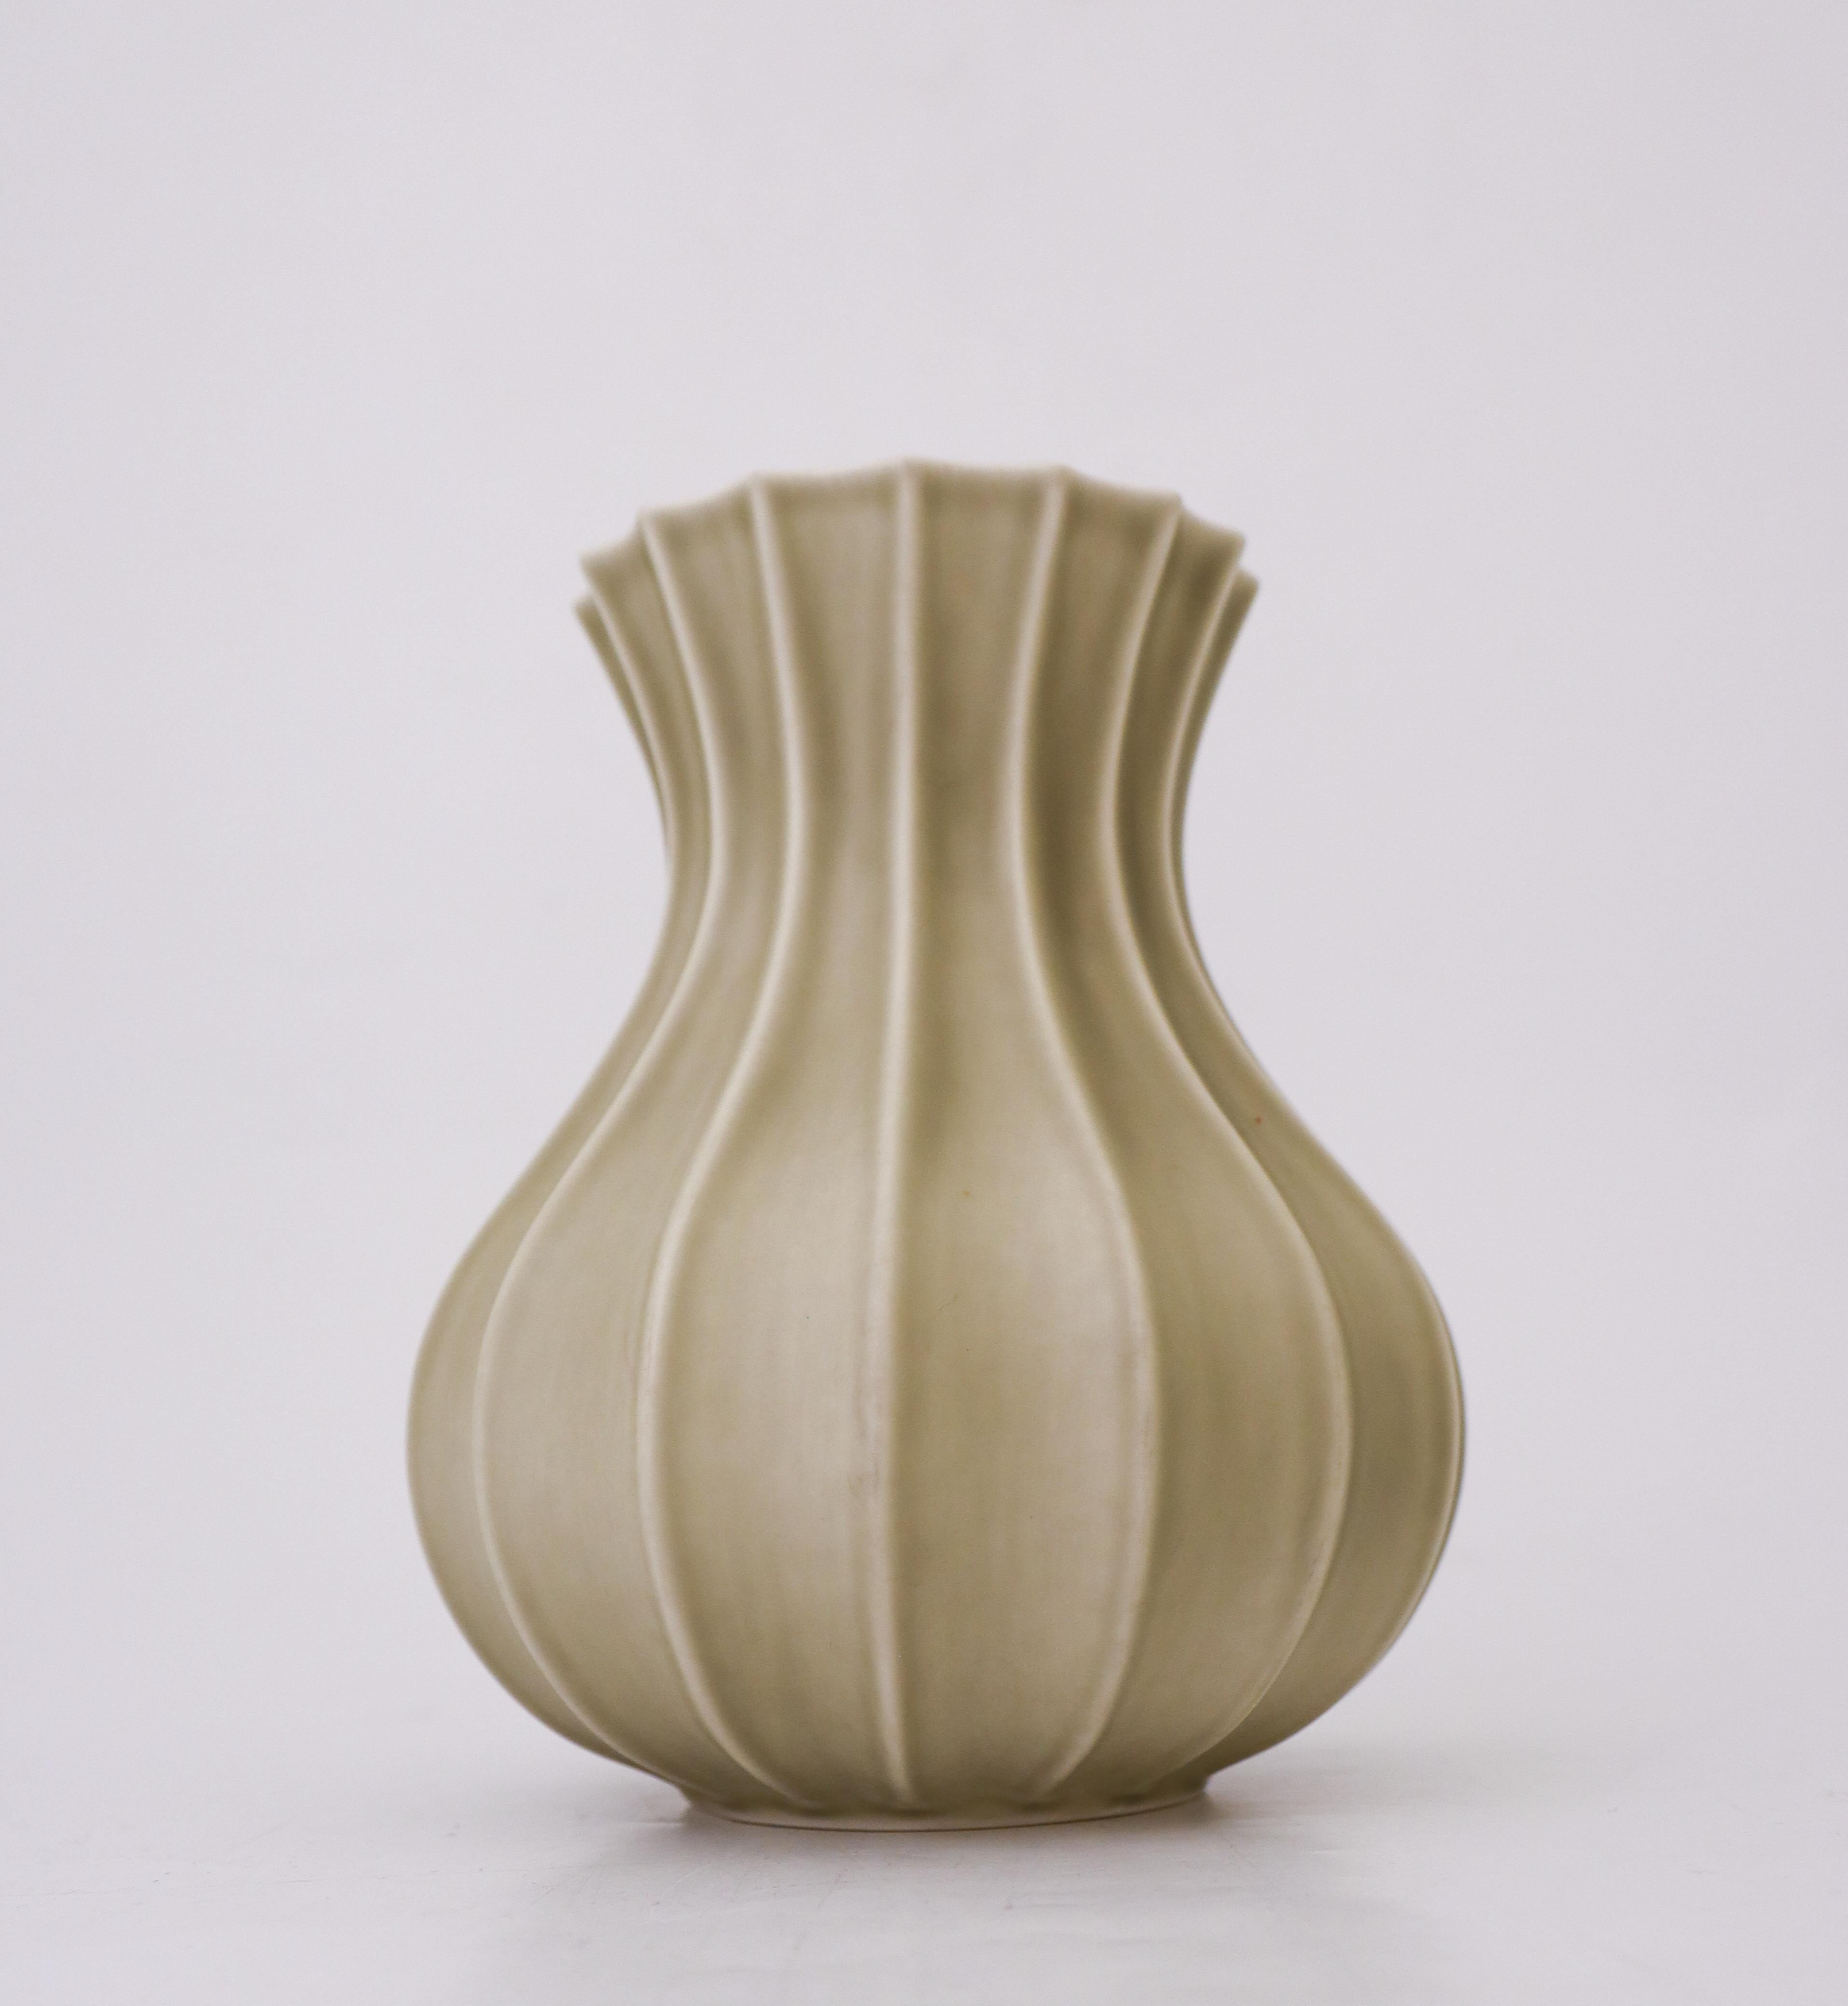 Un joli vase vert olive/gris conçu par Pia Rönndahl chez Rörstrand dans les années 1980. Le vase mesure 17,5 cm de haut et est en excellent état, à l'exception de quelques petites marques. Il est marqué comme sur la photo et est de 2ème qualité. 

